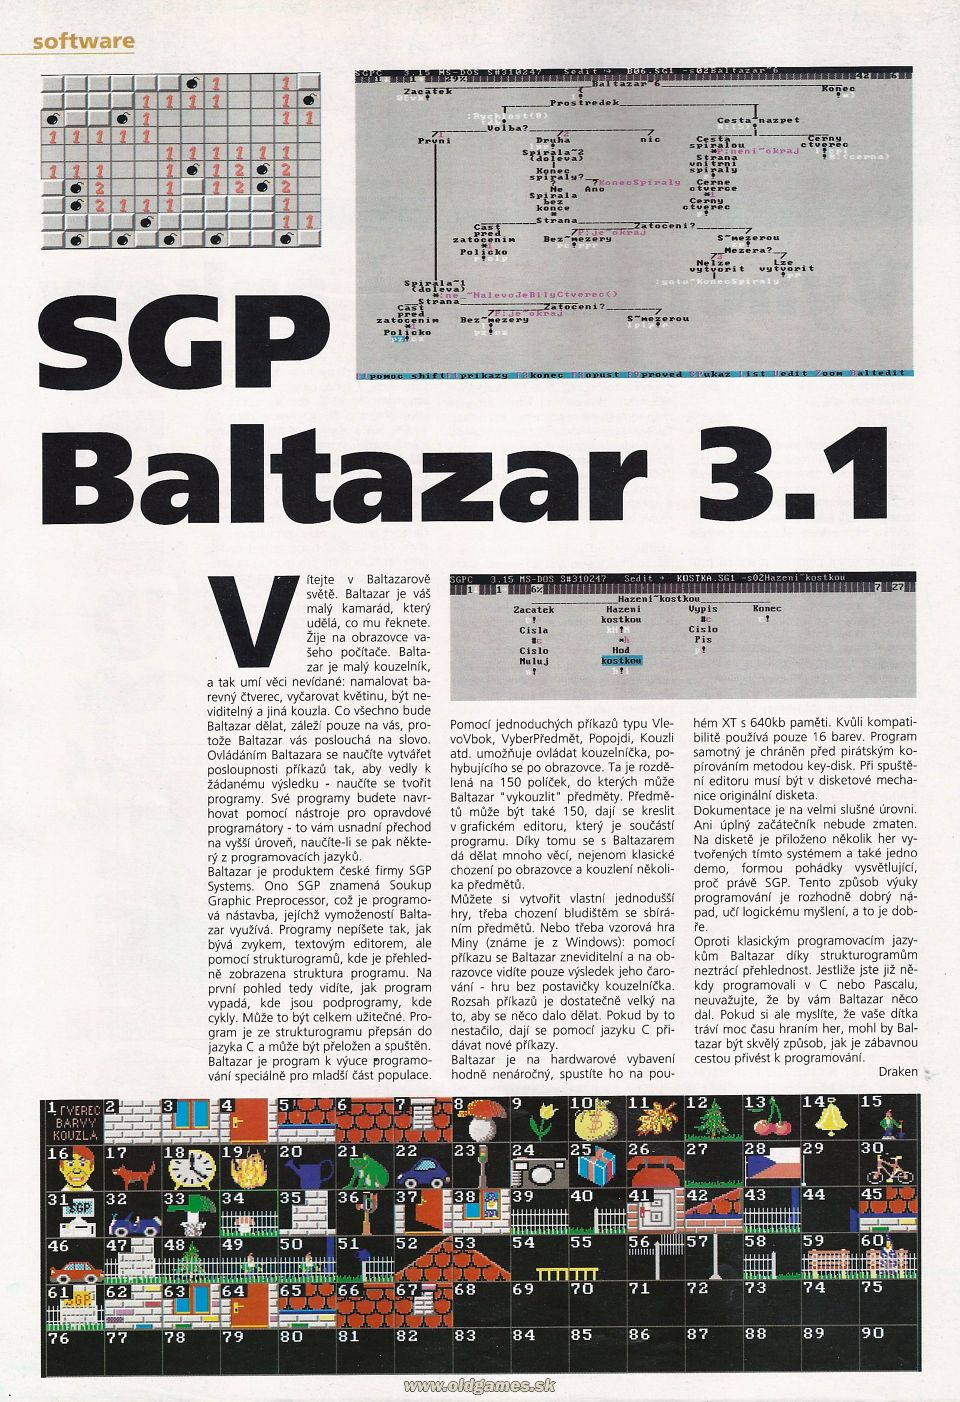 Software: SGP Balthazar 3.1